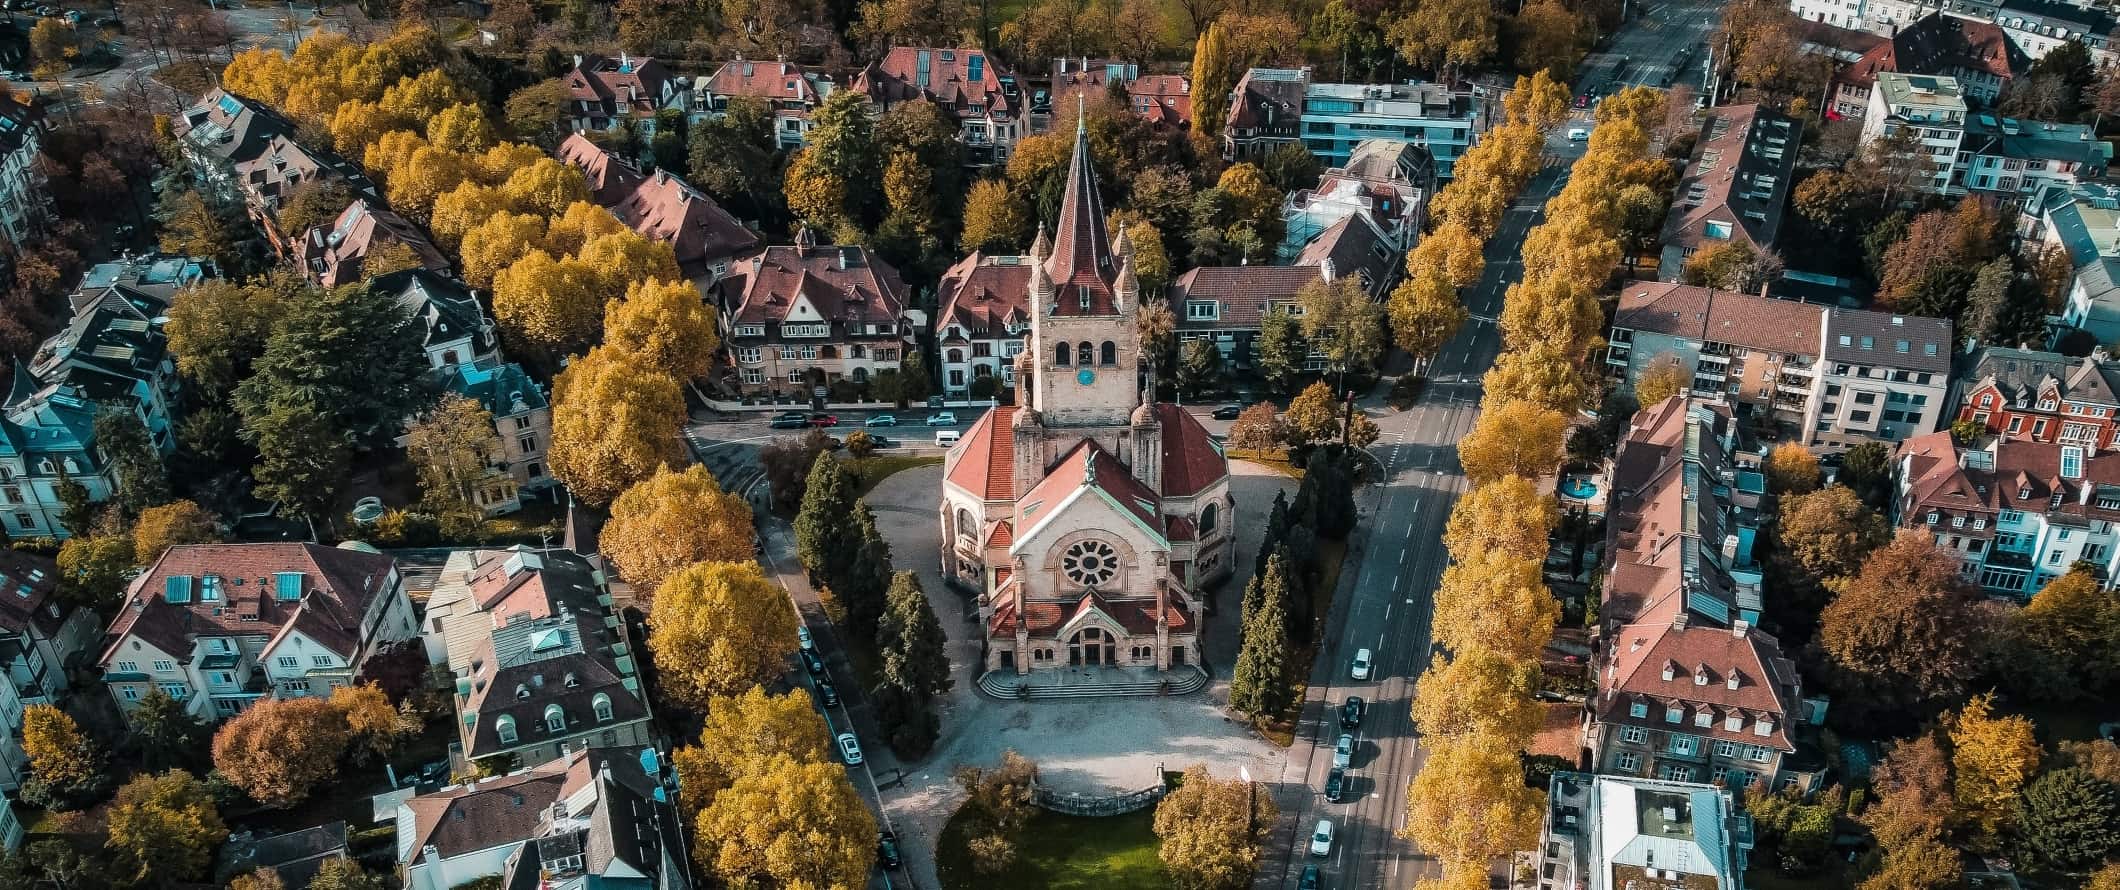 Vista aérea de ruas arborizadas com igreja histórica na praça de Basileia, Suíça